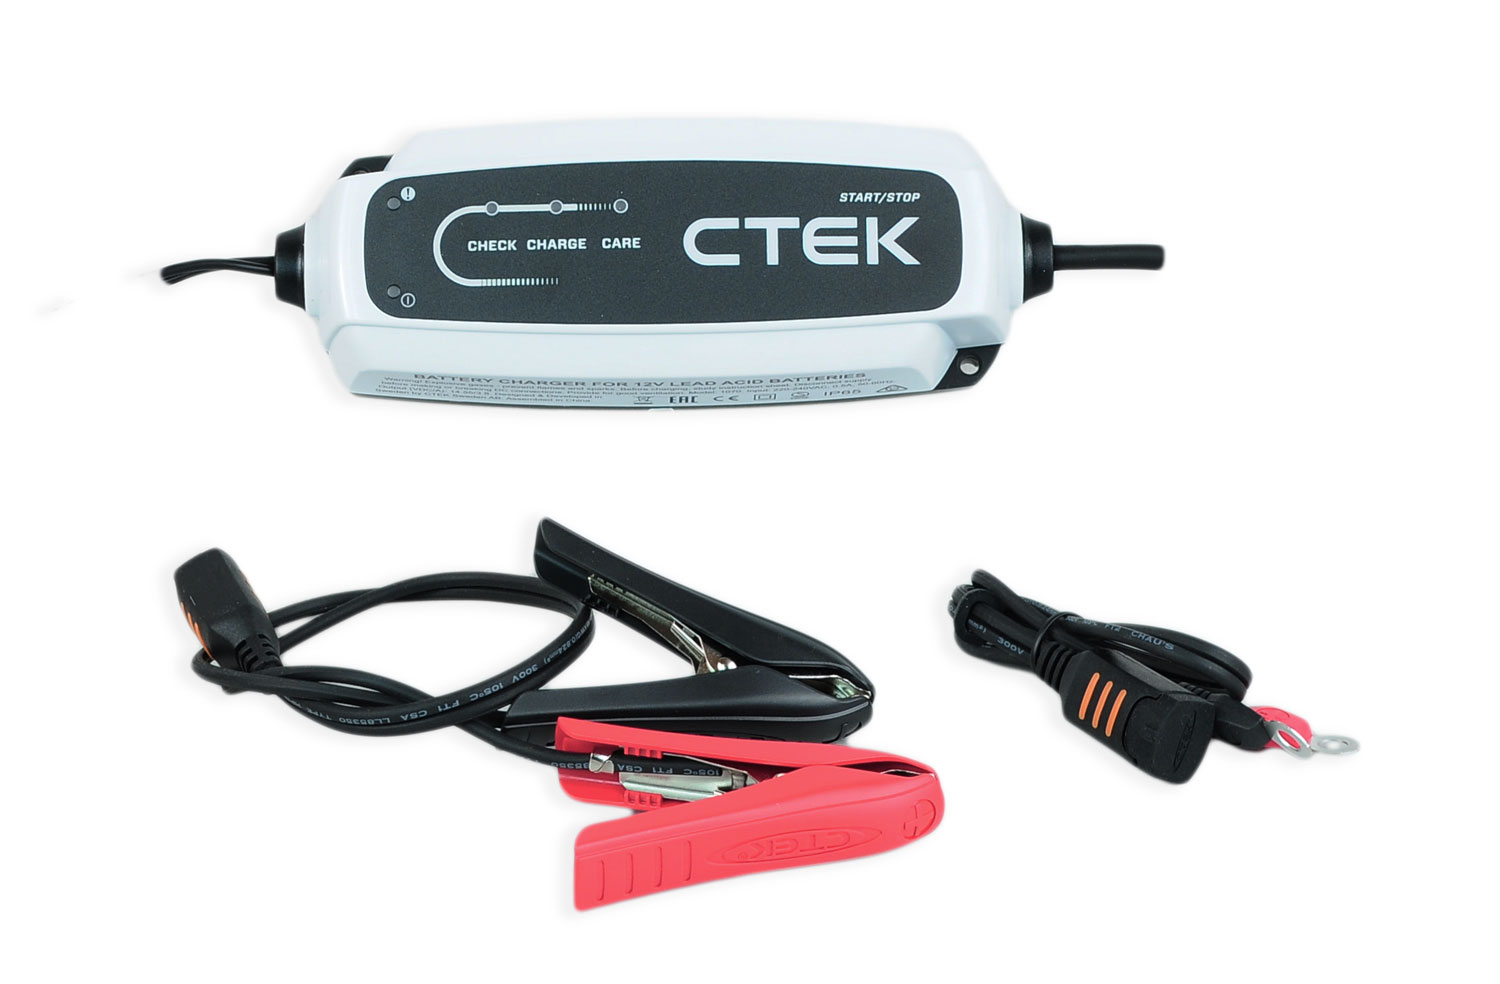 Ctek CT5 Start/Stop Batterieladegerät